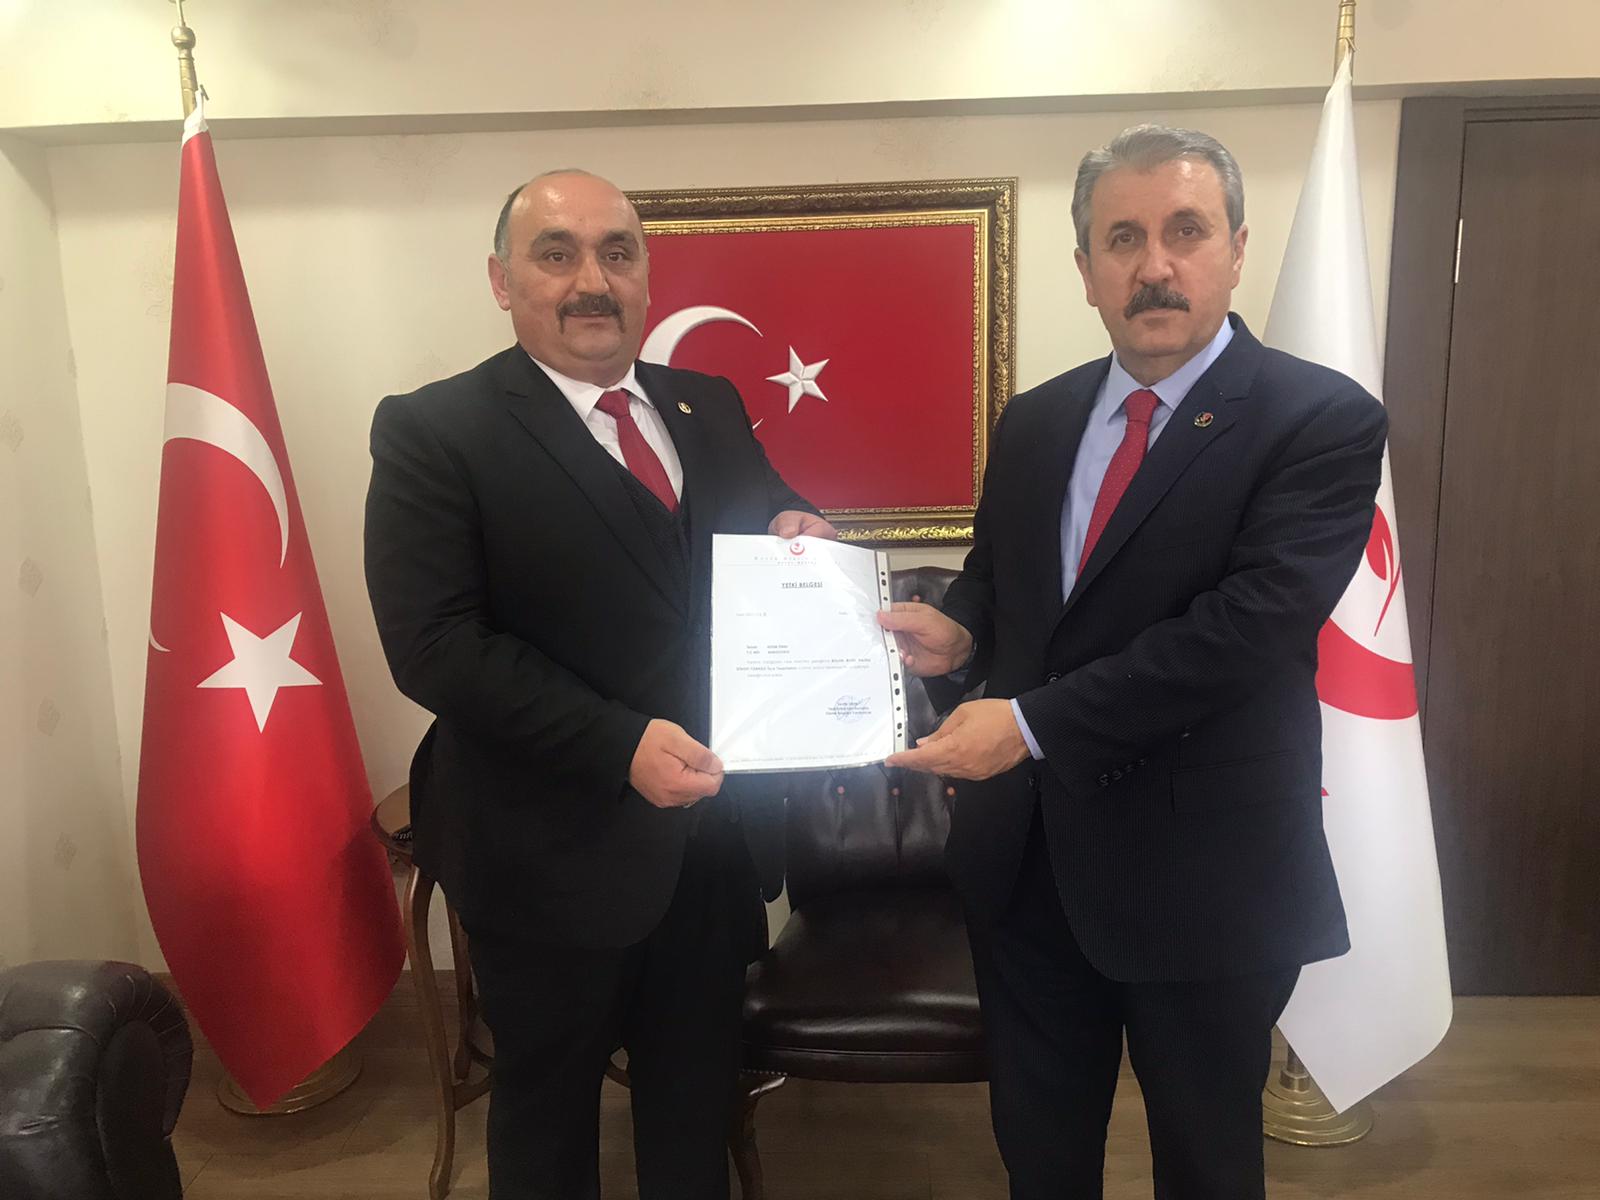 BBP Türkeli İlçe Başkanlığına Adem Ünal atandı